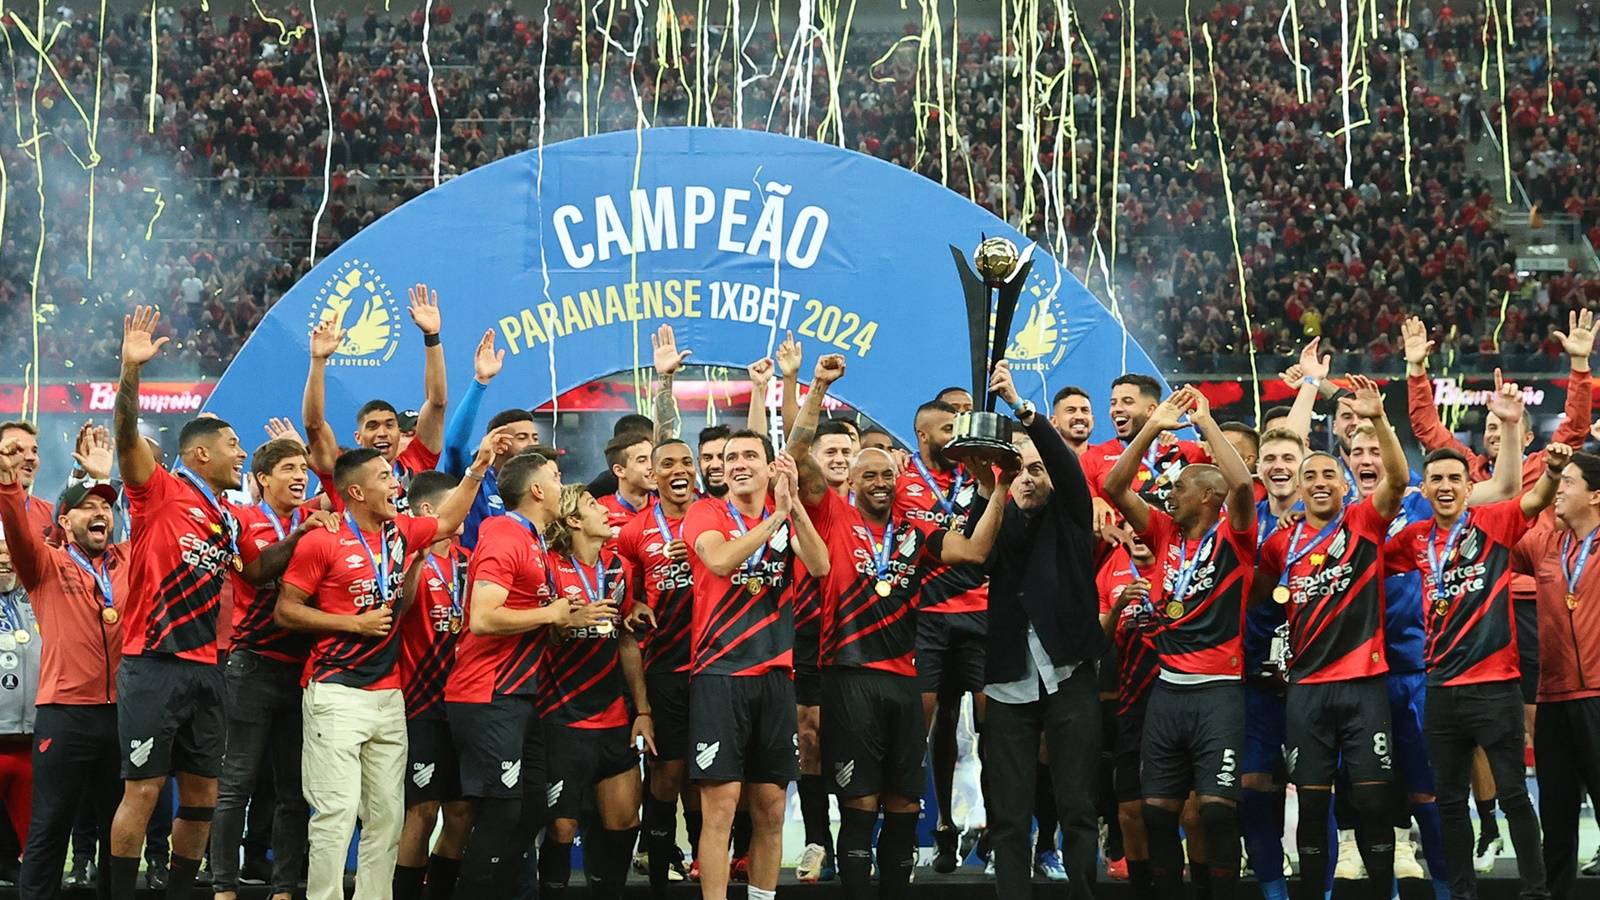 Athletico/PR: Triunfo histórico marca bicampeonato Paranaense no ano do Centenário